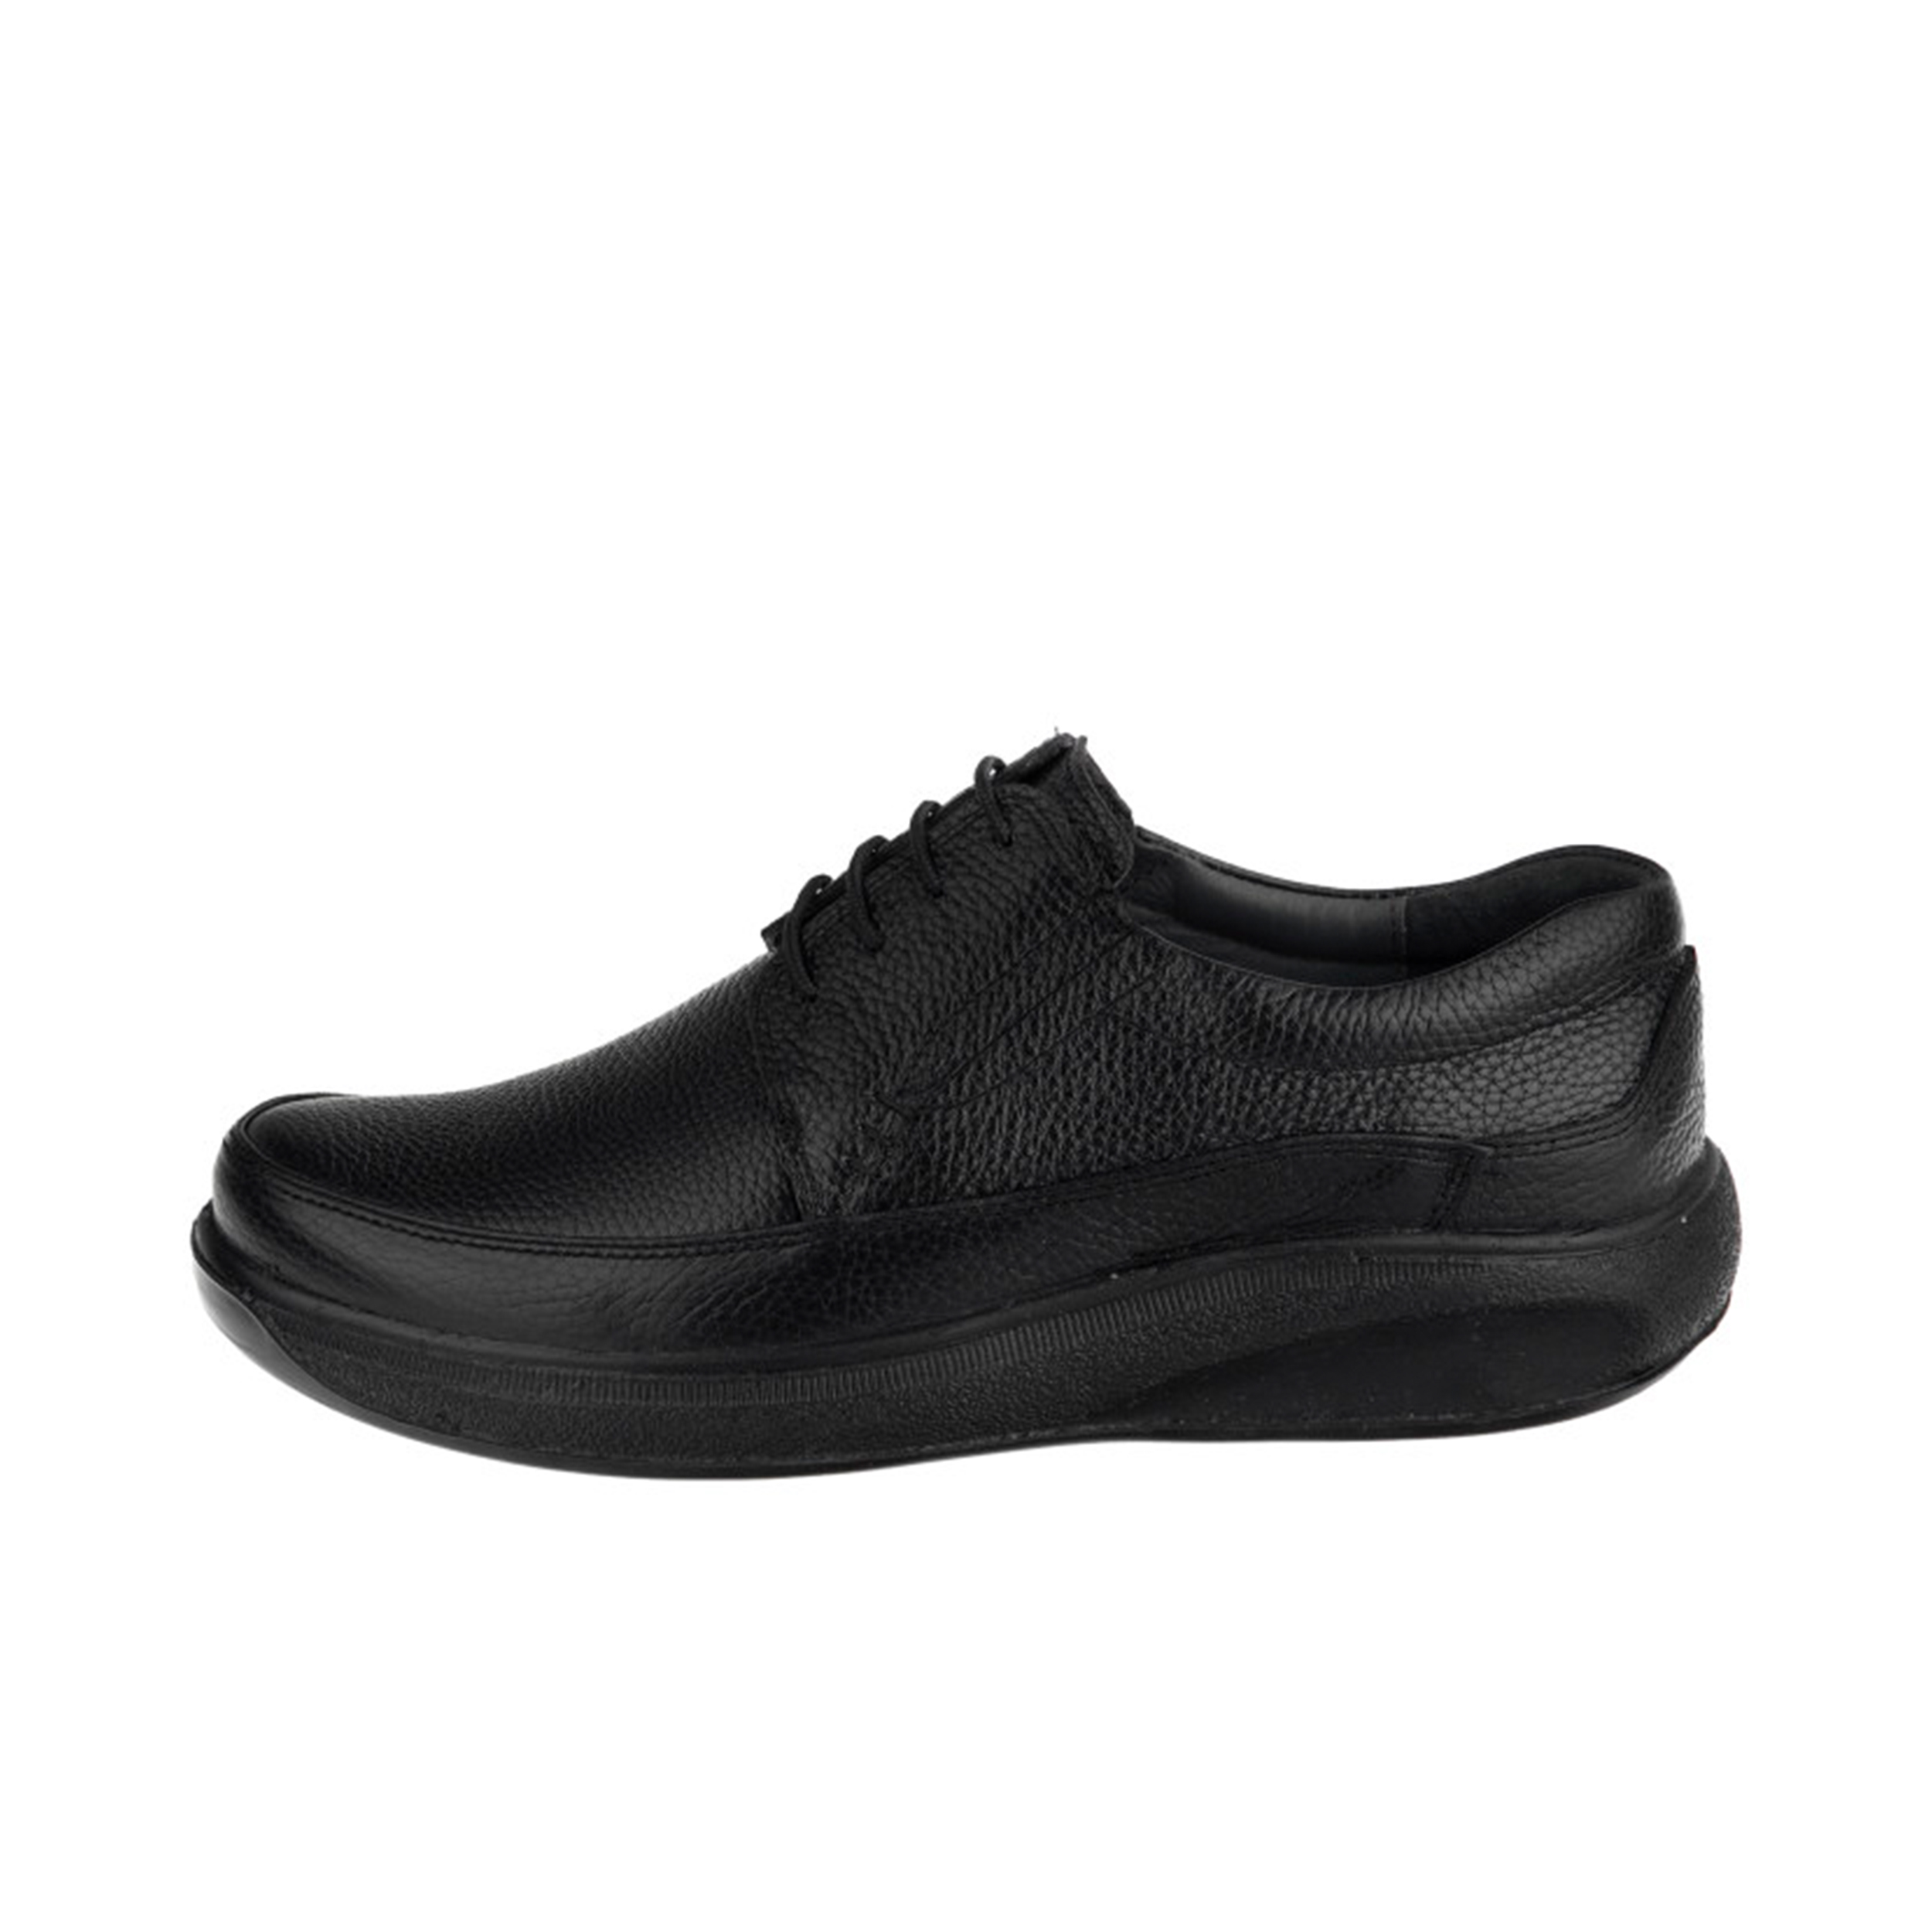 نکته خرید - قیمت روز کفش طبی مردانه کروماکی مدل kms925 خرید